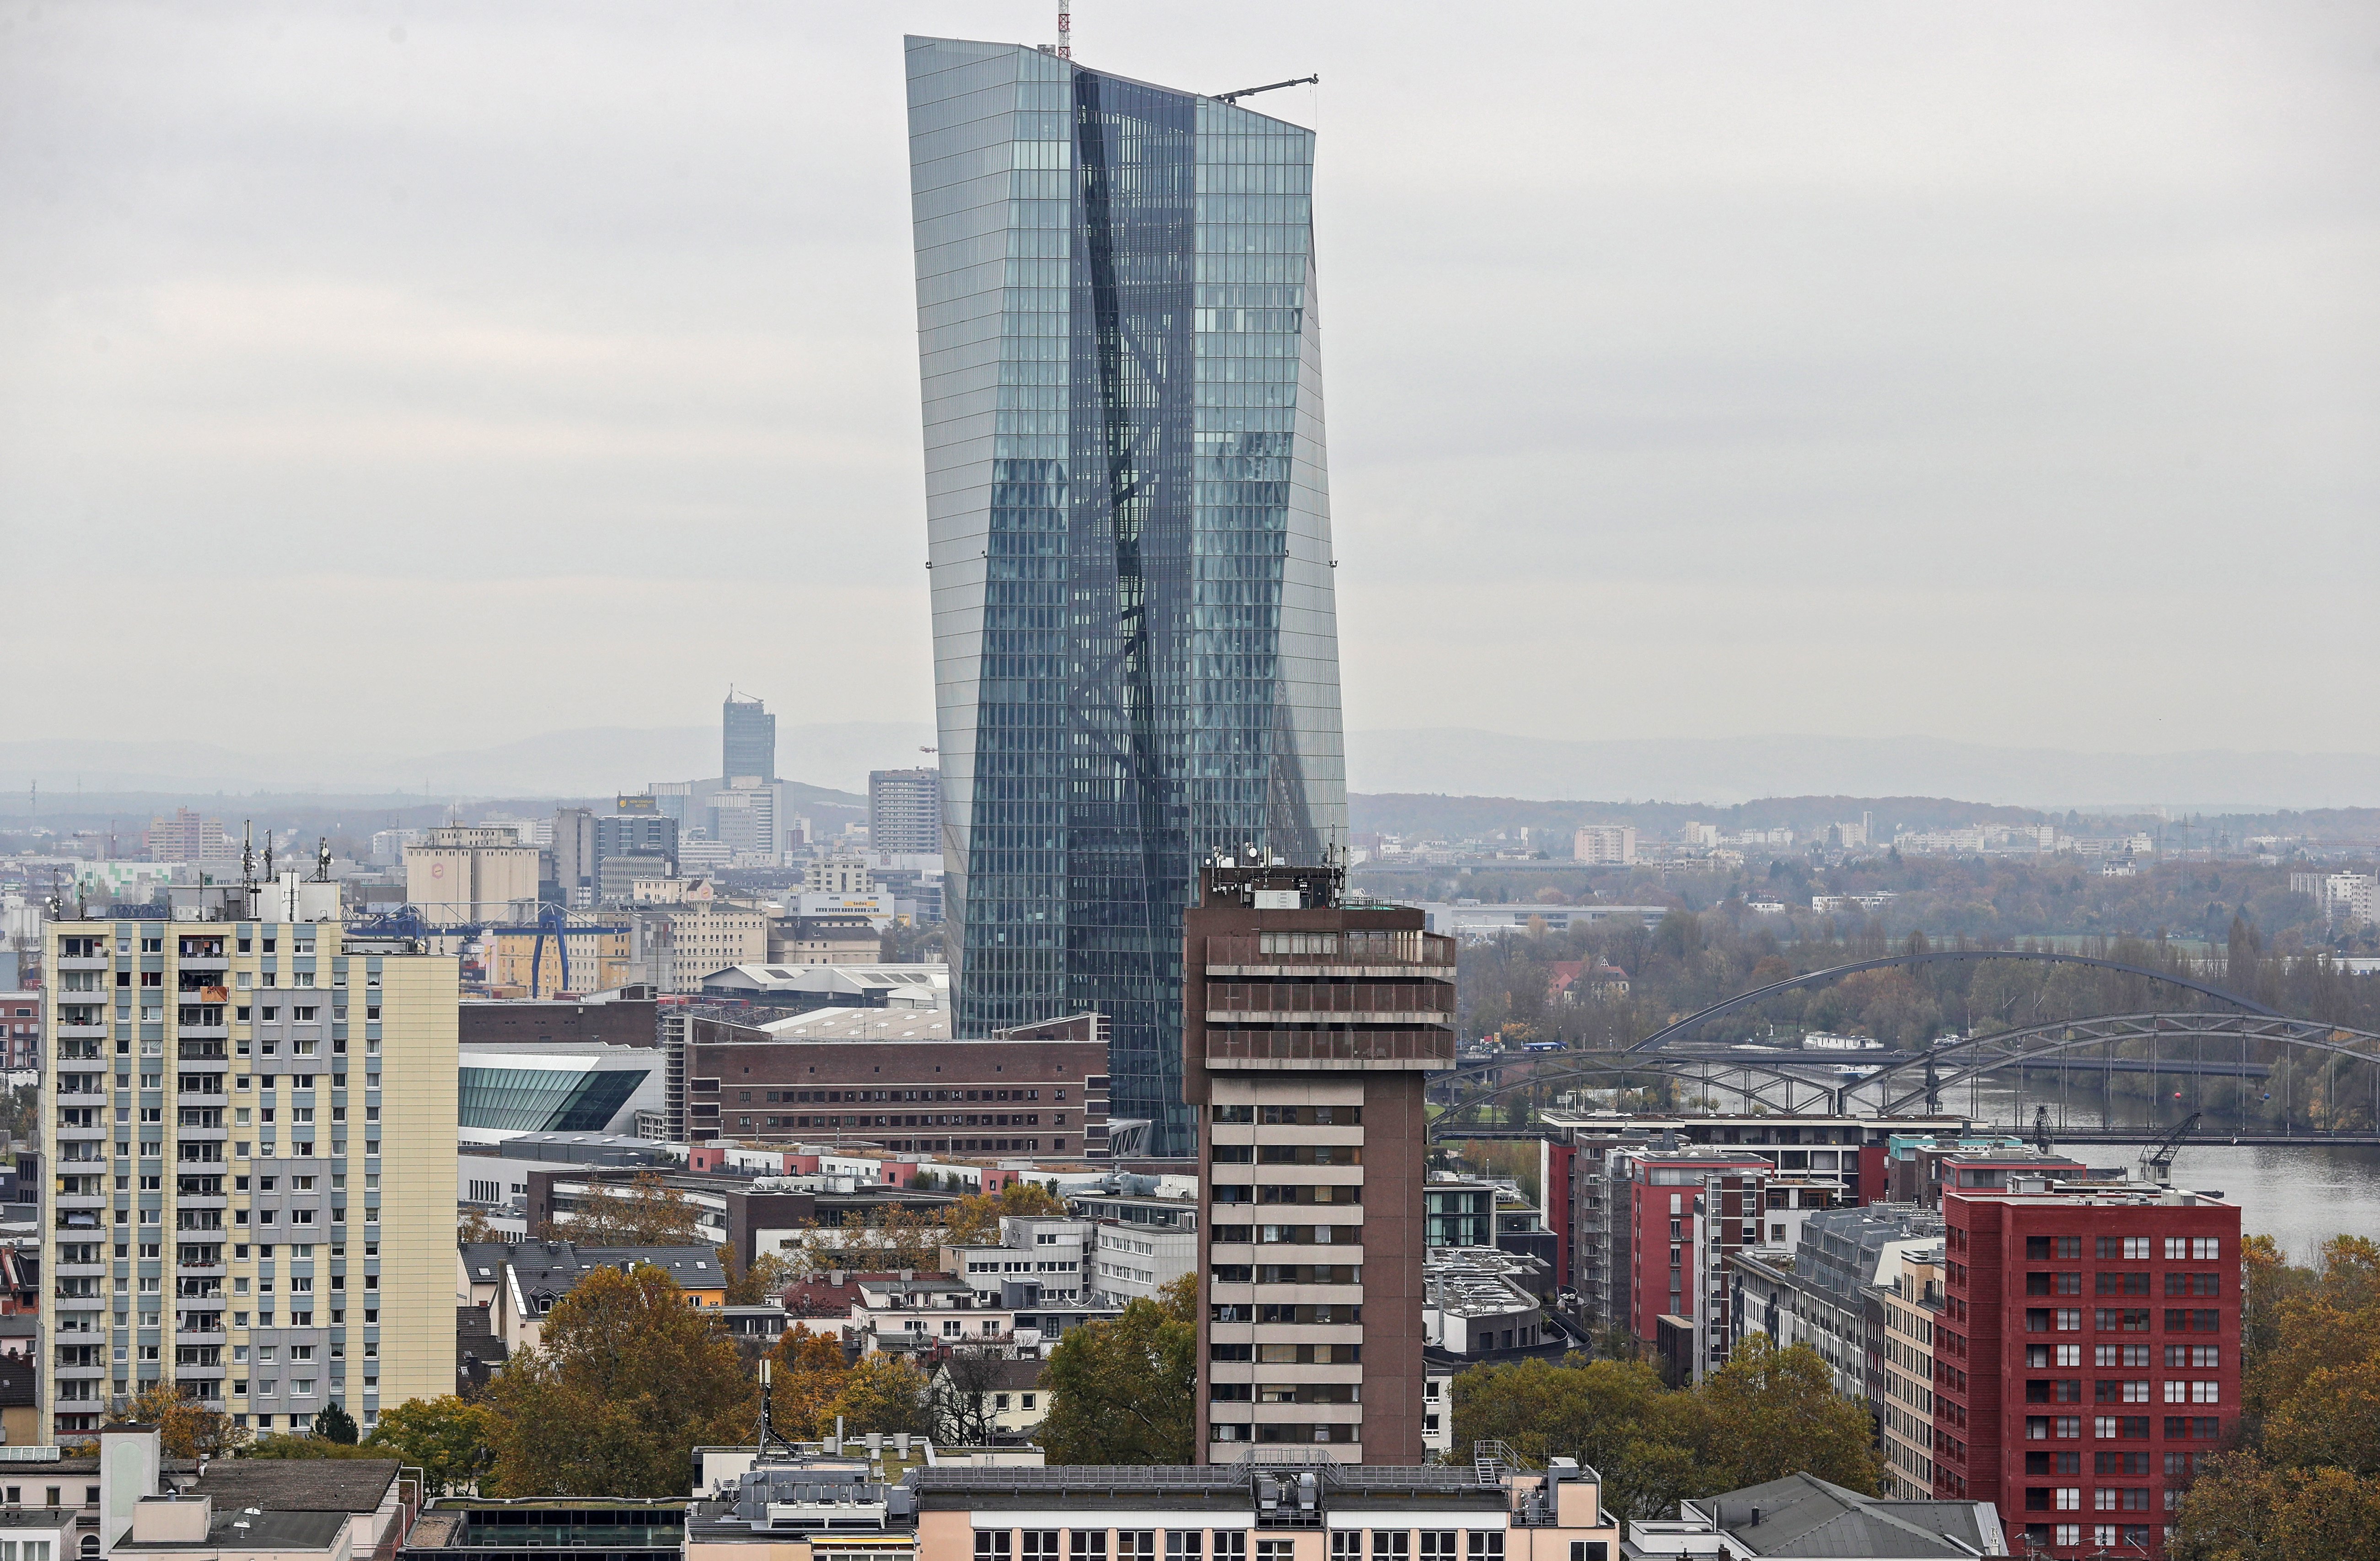 ECB Frankfurt